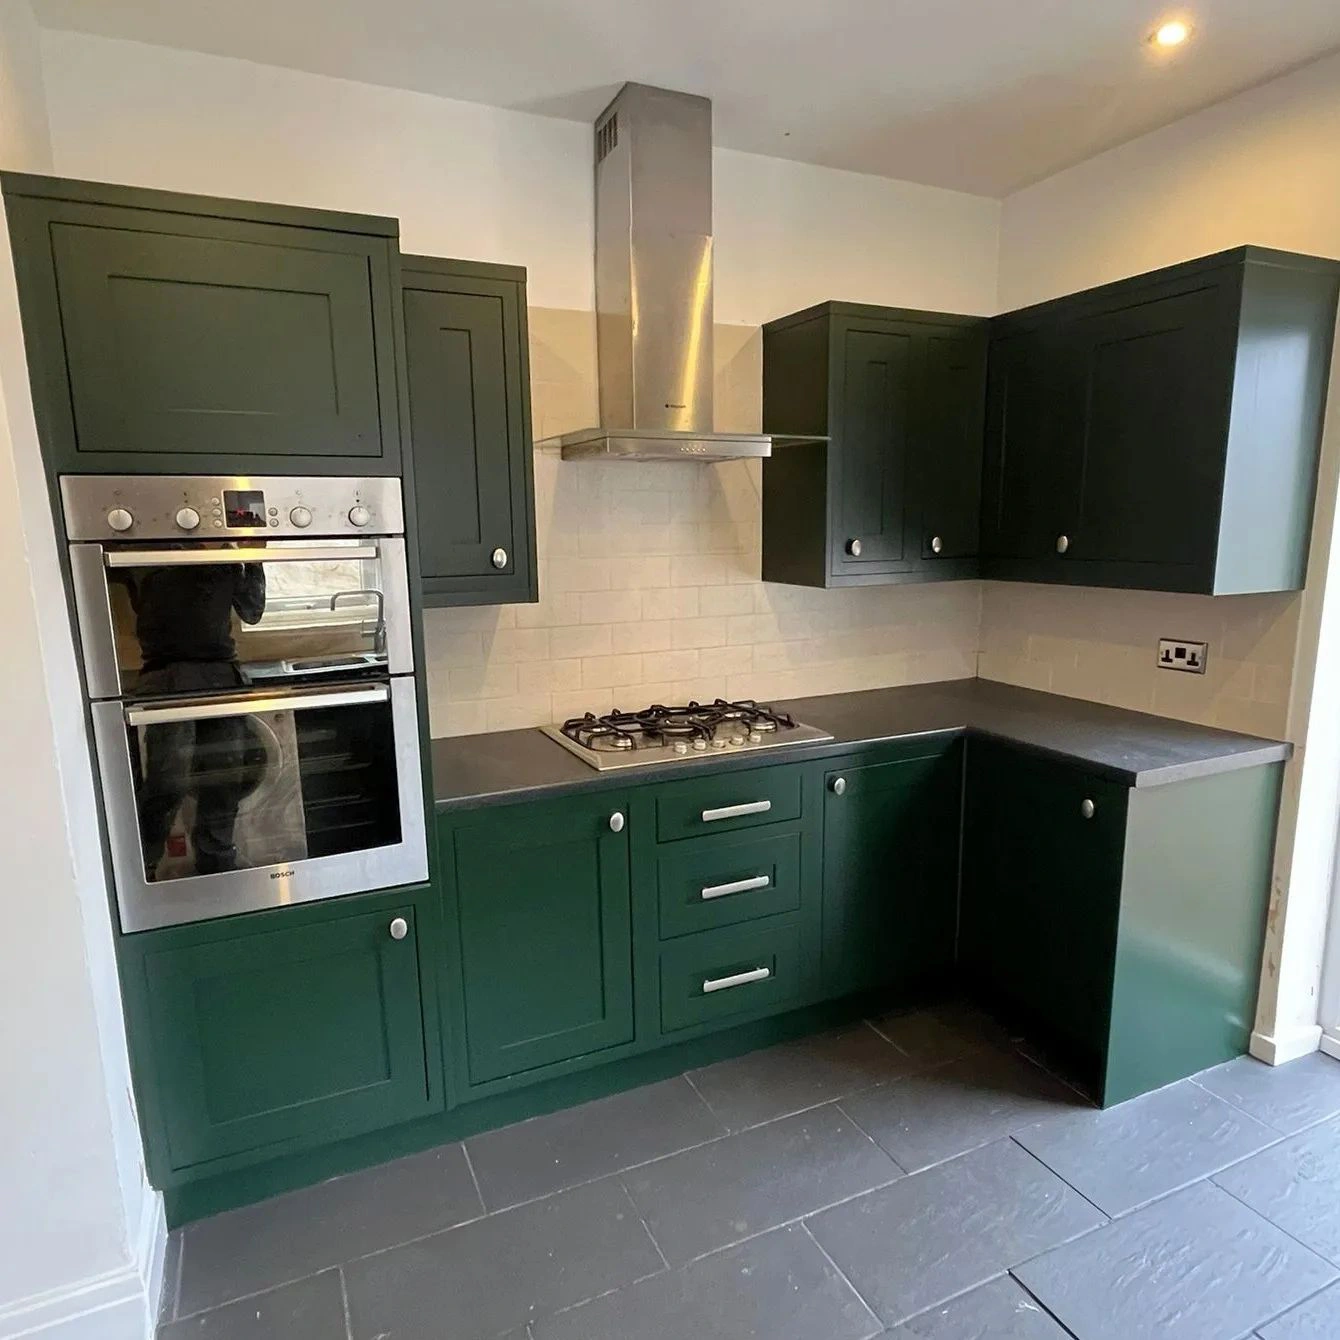 Fir green RAL 6009 kitchen cabinets